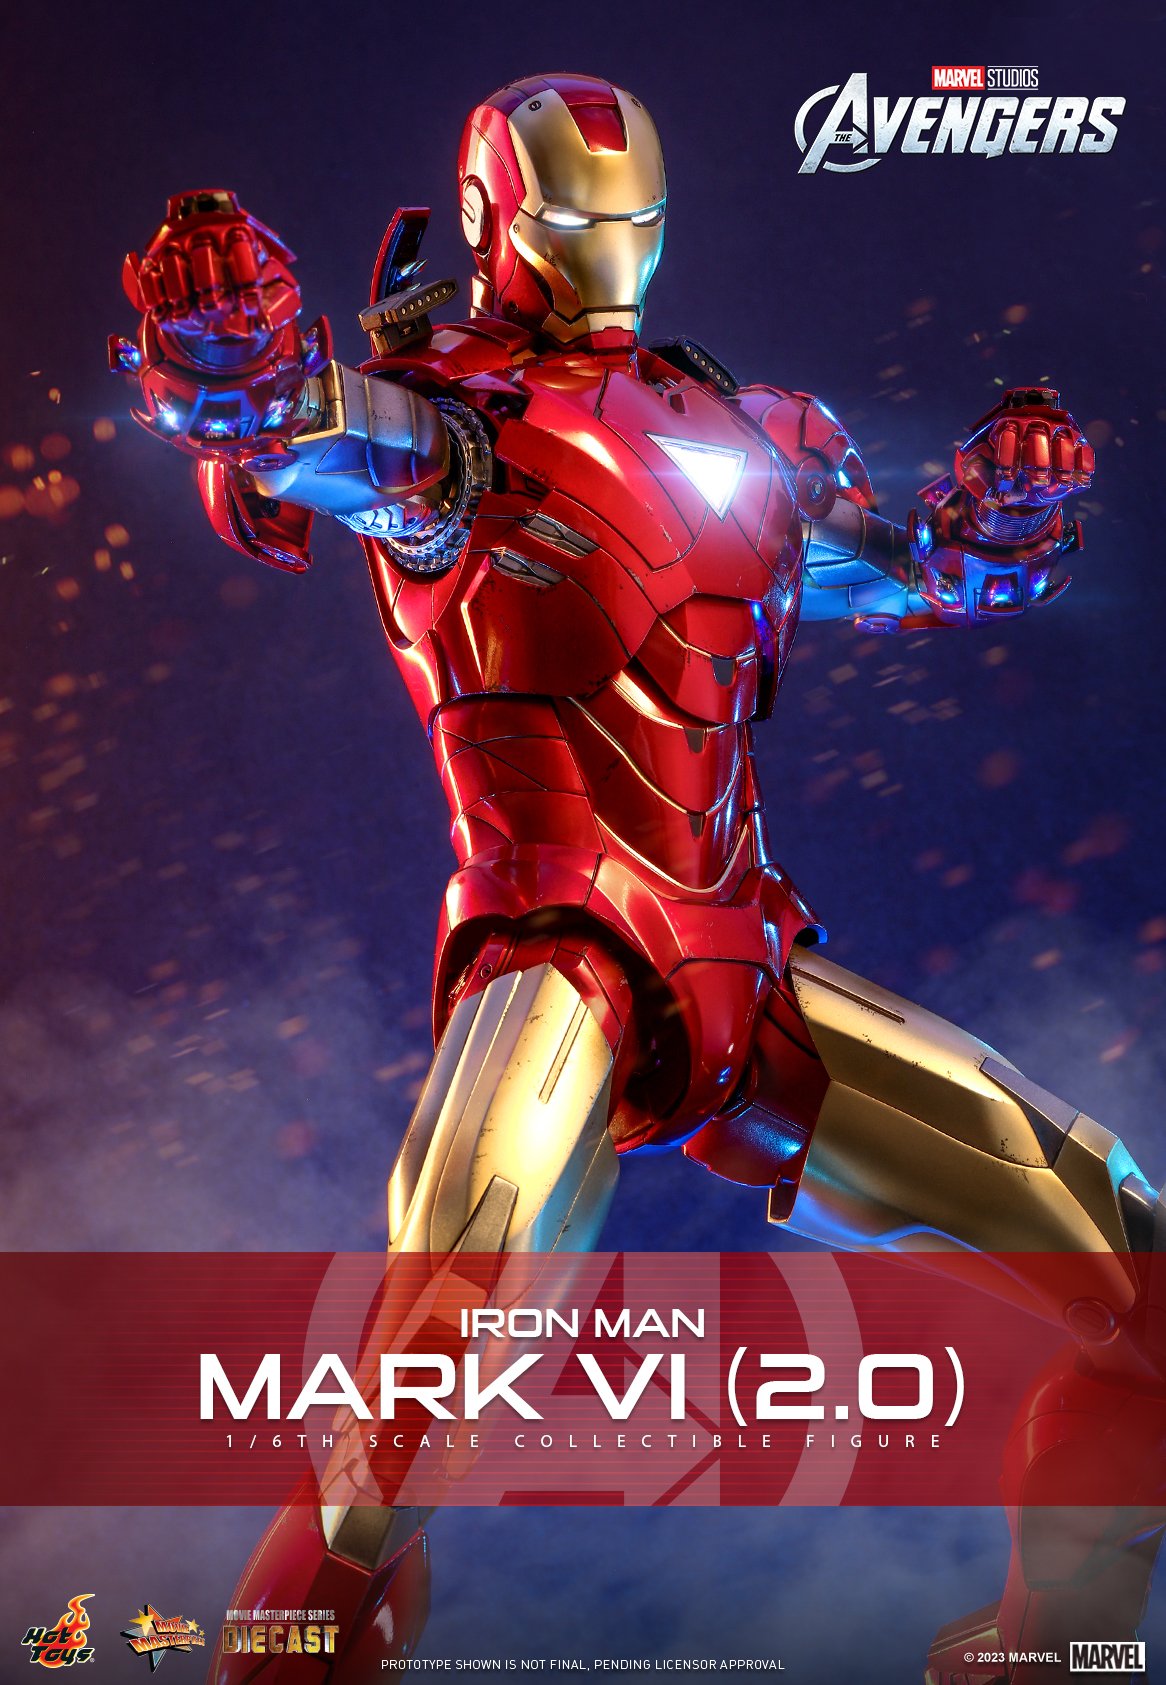 Các fan của Marvel, hãy đến và xem bản vẽ mặt nạ Iron Man này! Với những sọc xoắn đầy sáng tạo và màu sắc tinh tế, bản vẽ này sẽ khiến bạn cảm thấy được sự hưng phấn và niềm đam mê của các tác giả. Hãy cùng khám phá vẻ đẹp của Iron Man qua bản vẽ này nhé!